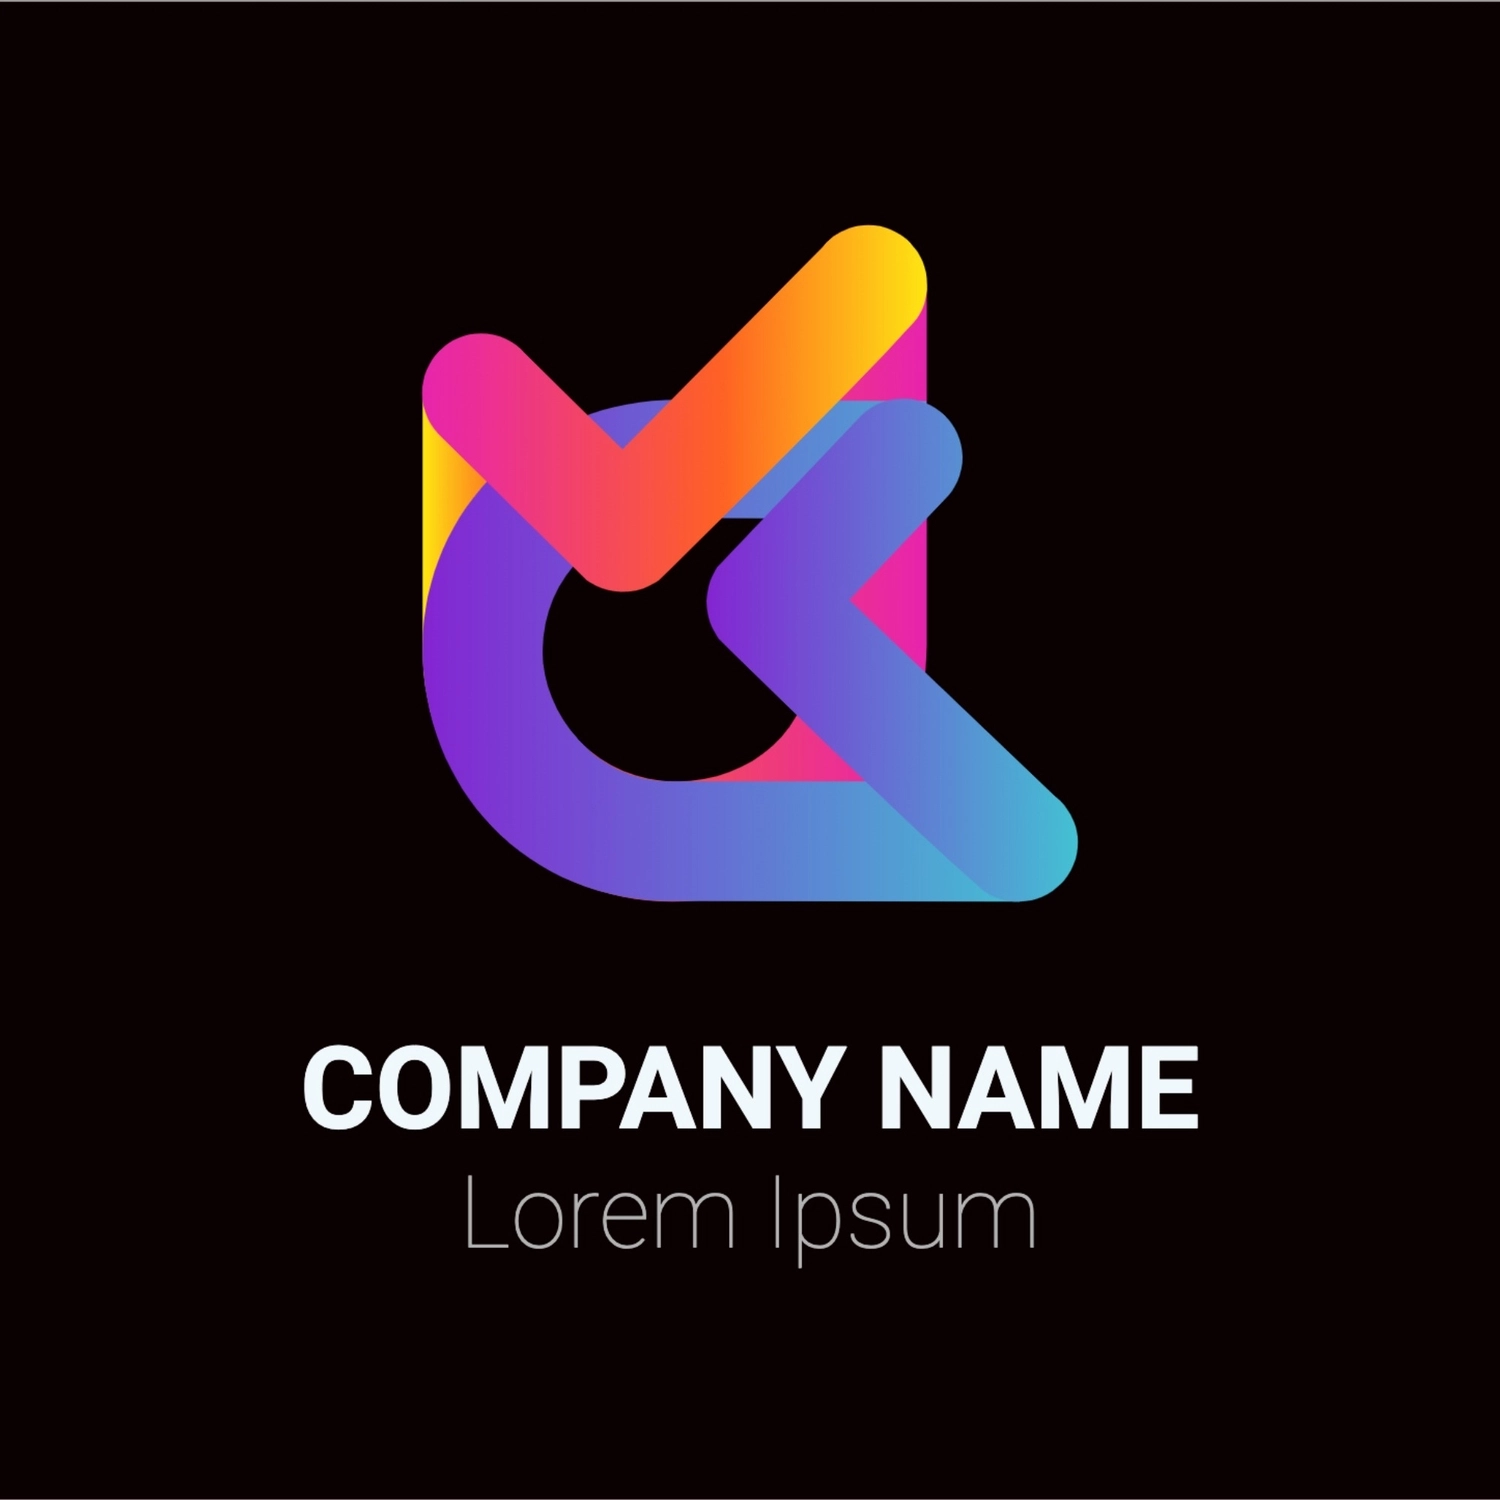 カラフルな棒が絡まったようなロゴ, purple, create, design, Logo template